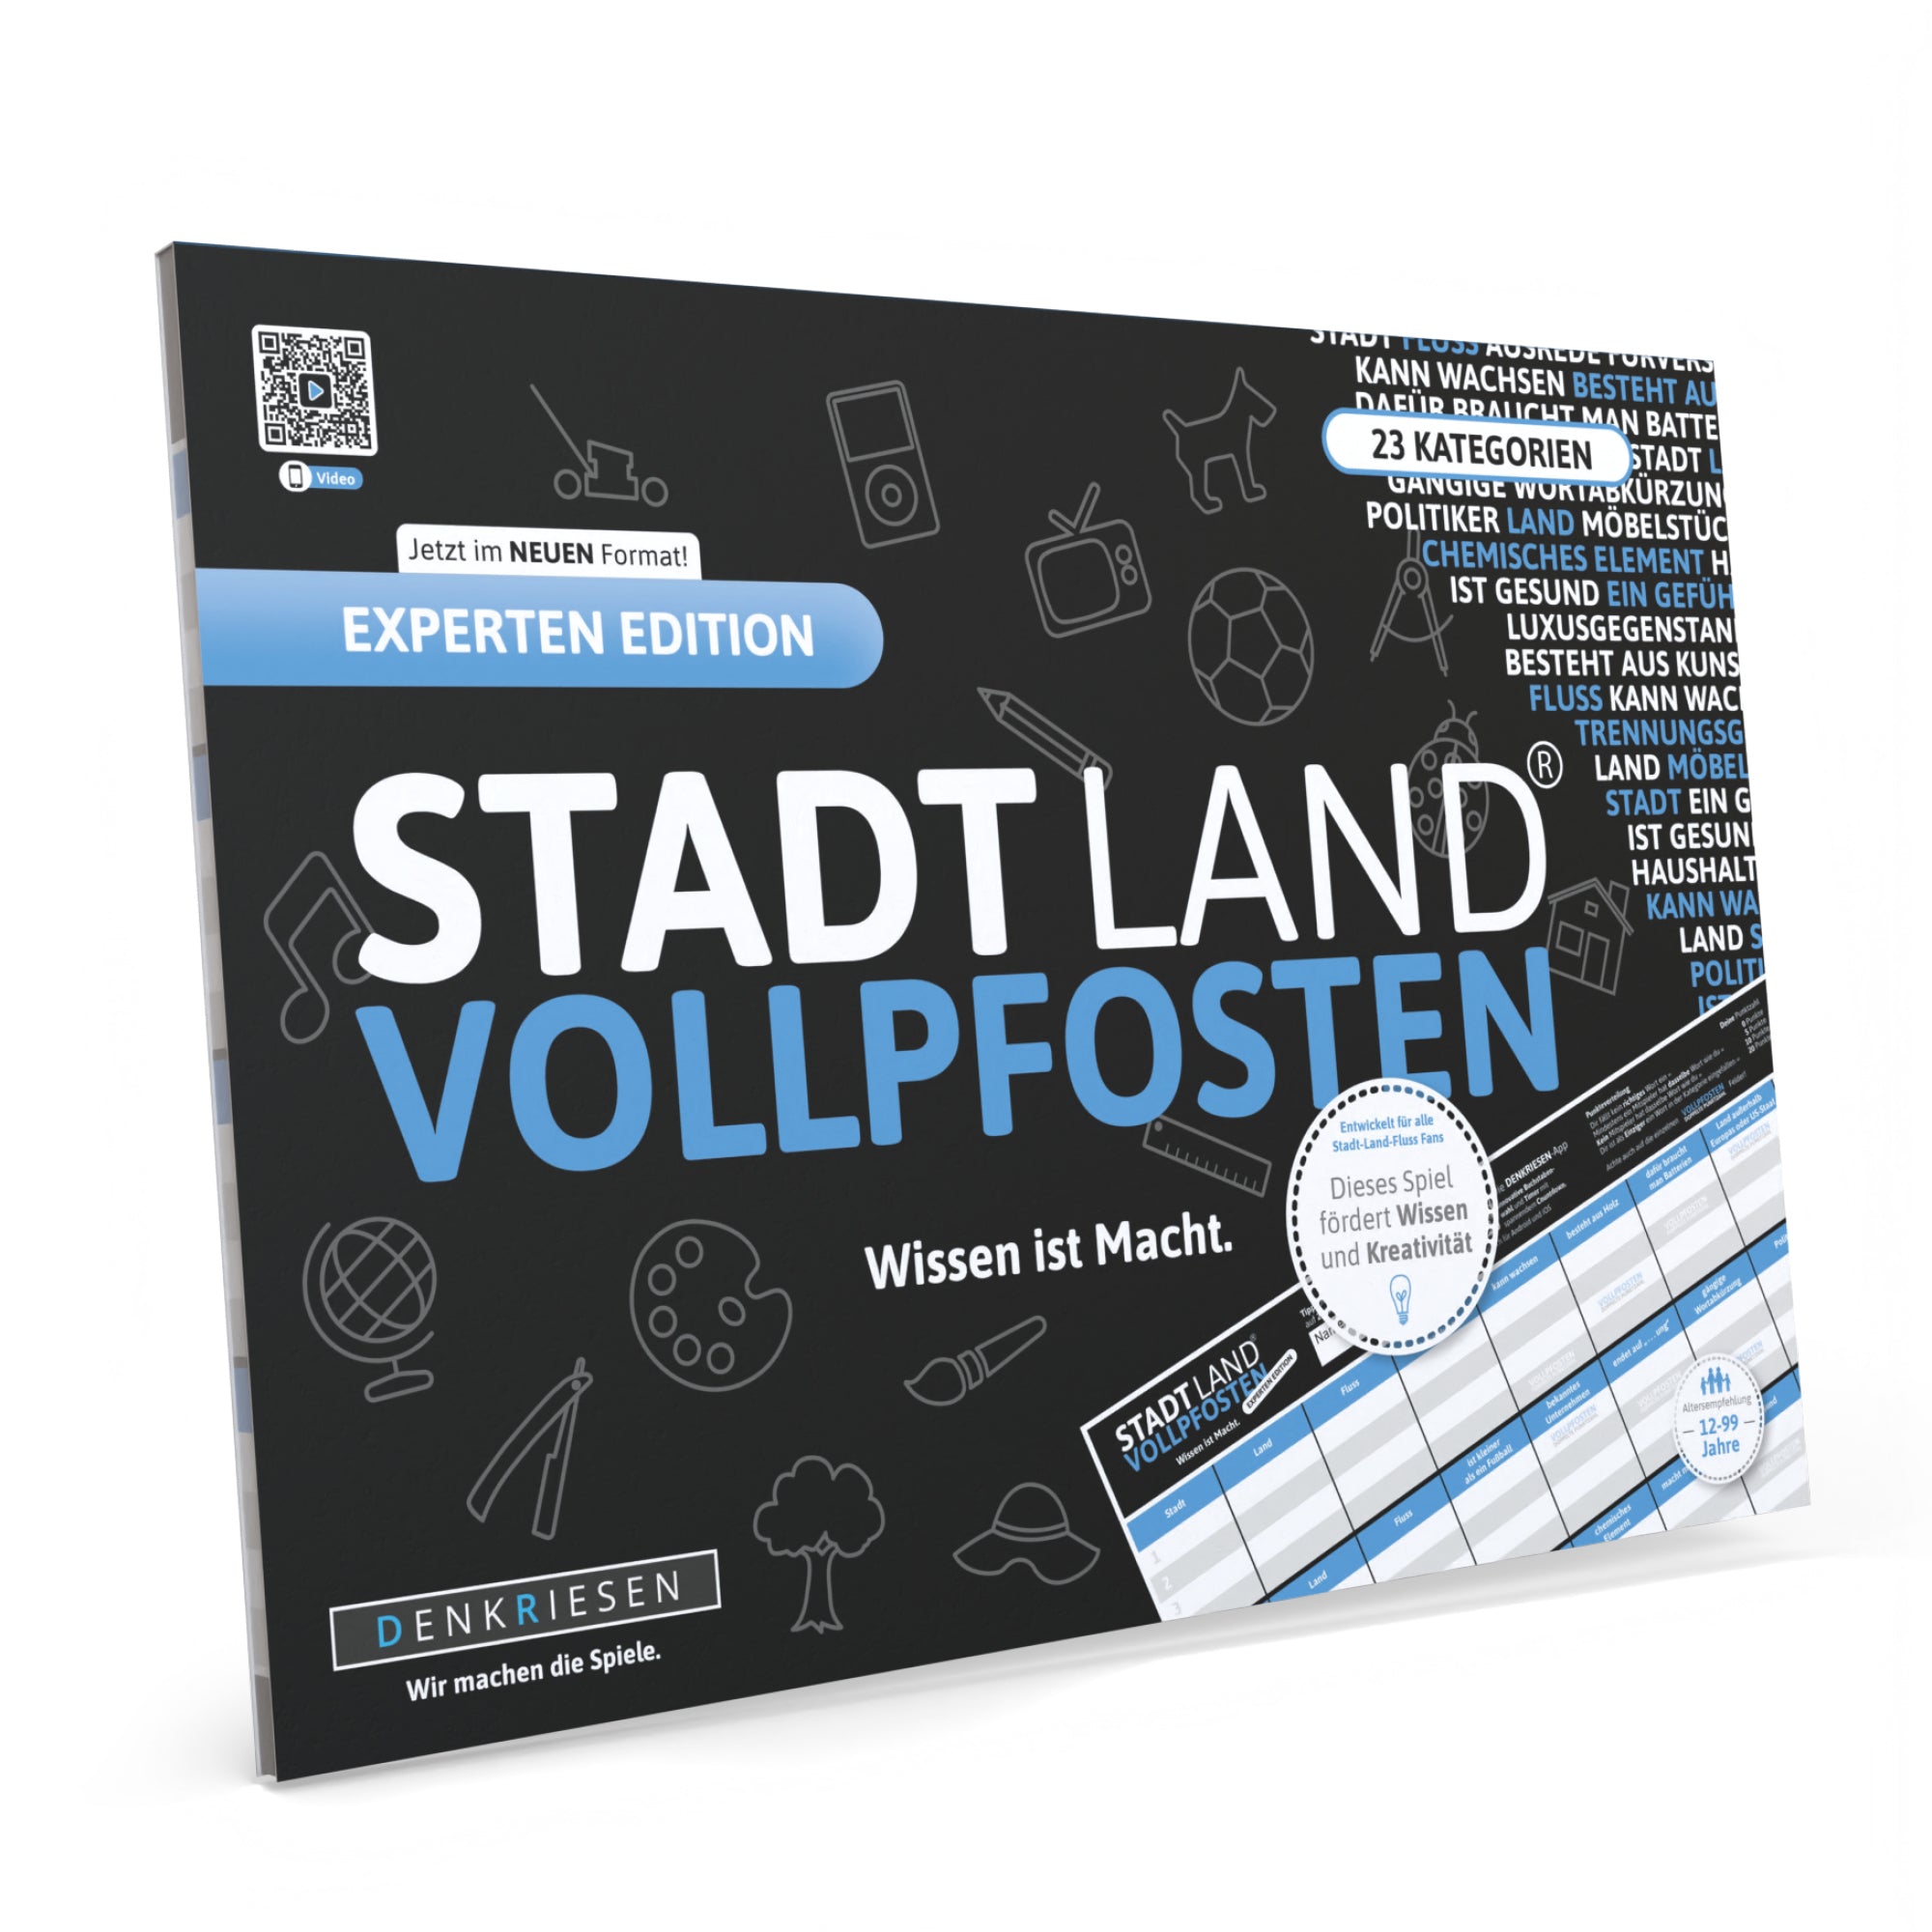 Stadt Land Vollpfosten® Experten Edition – "Wissen ist Macht." | A4 Spielblock